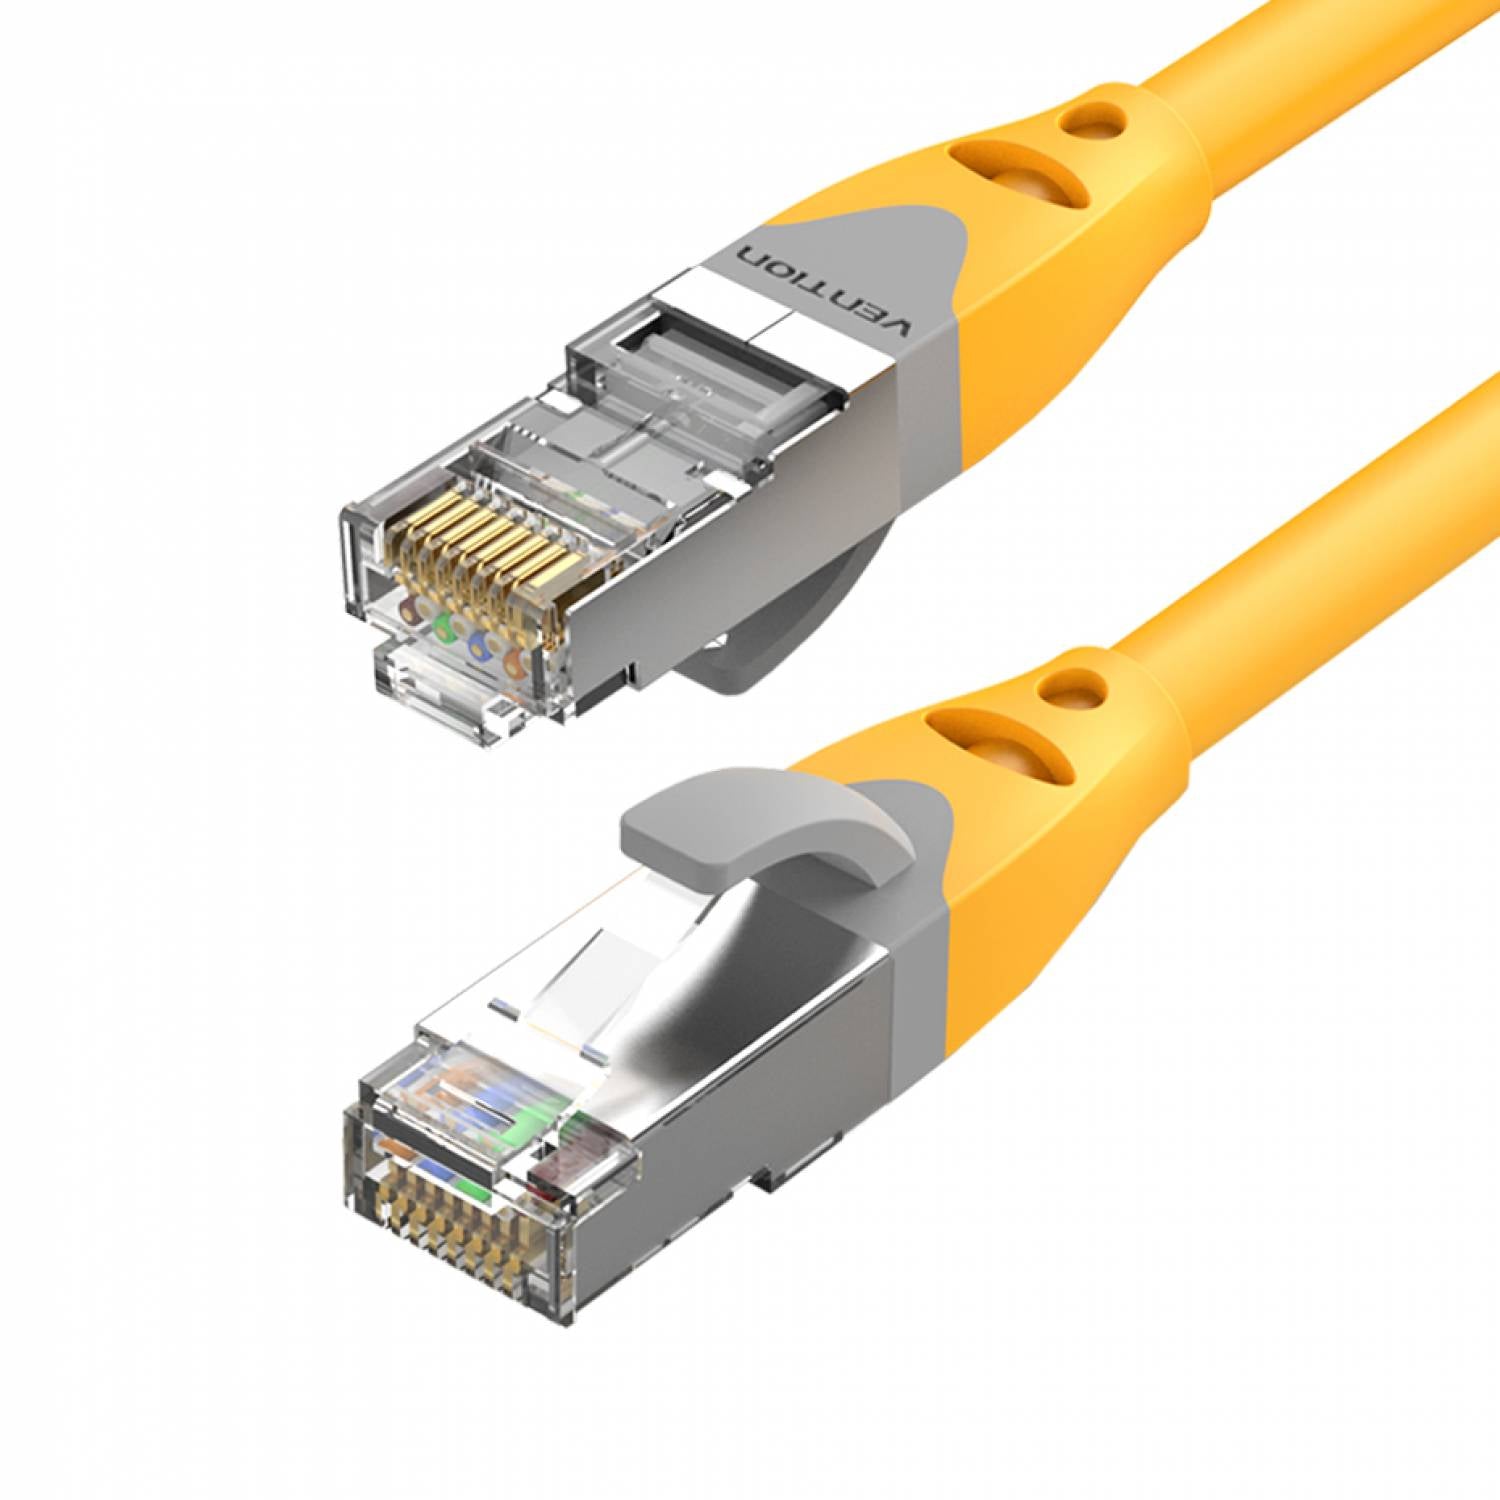 Cat6 Ethernet LAN Cable 1m 2m 3m 5m 10m 15m 20m 30m 50m